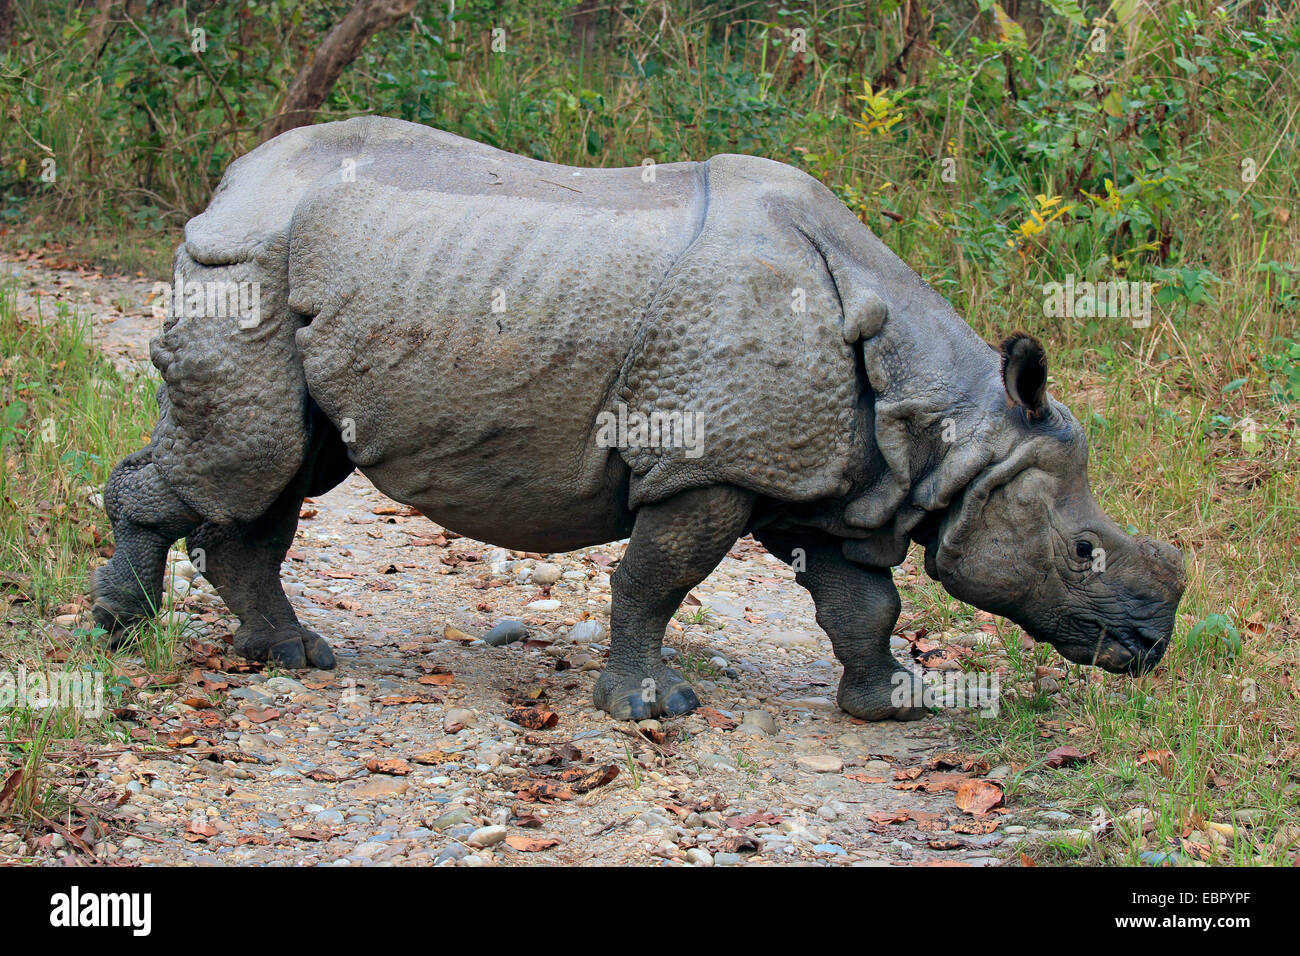 Plus de rhinocéros indien, Indien Grand rhinocéros à une corne (Rhinoceros unicornis), marchant sur un chemin et la recherche de nourriture, Népal, Terai, parc national de Chitwan Banque D'Images